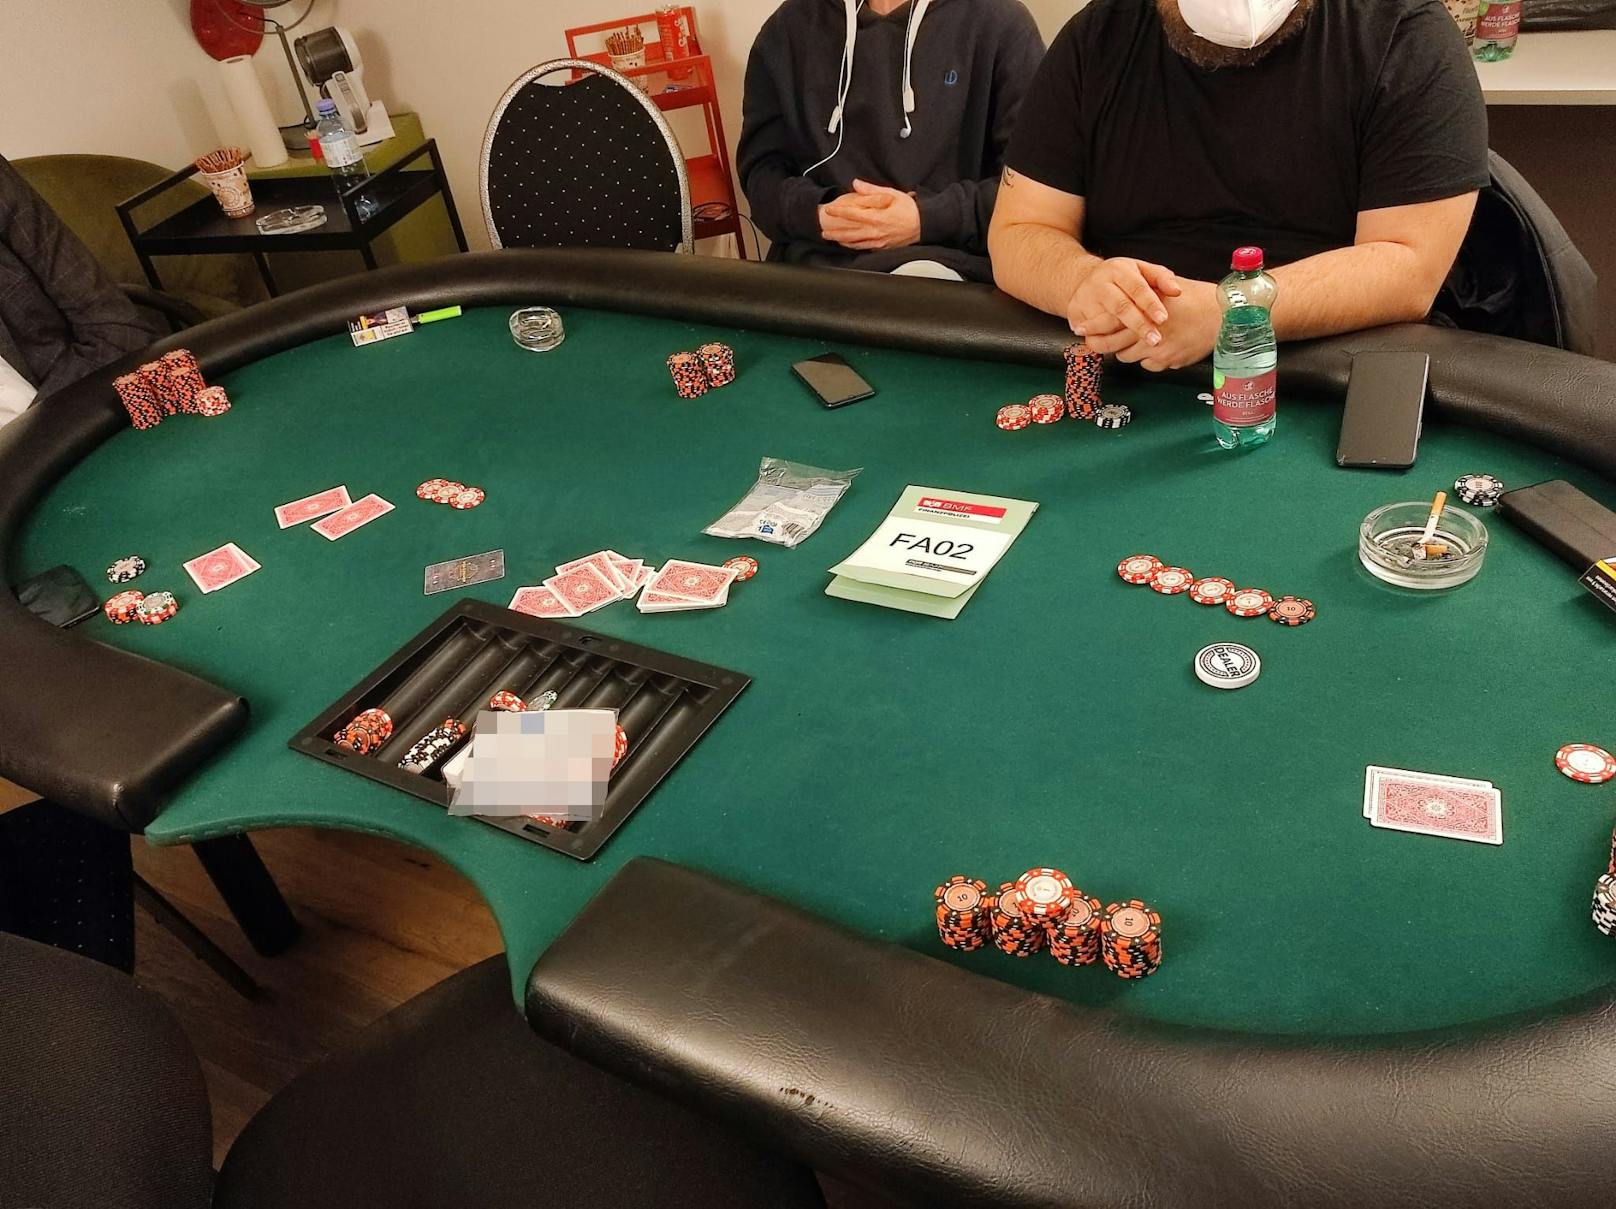 Die Finanzpolizei deckte in Wien-Favoriten ein illegales Pokerlokal auf. Bei der Razzia wurden 20 Spieler angetroffen und auch Drogen sichergestellt.